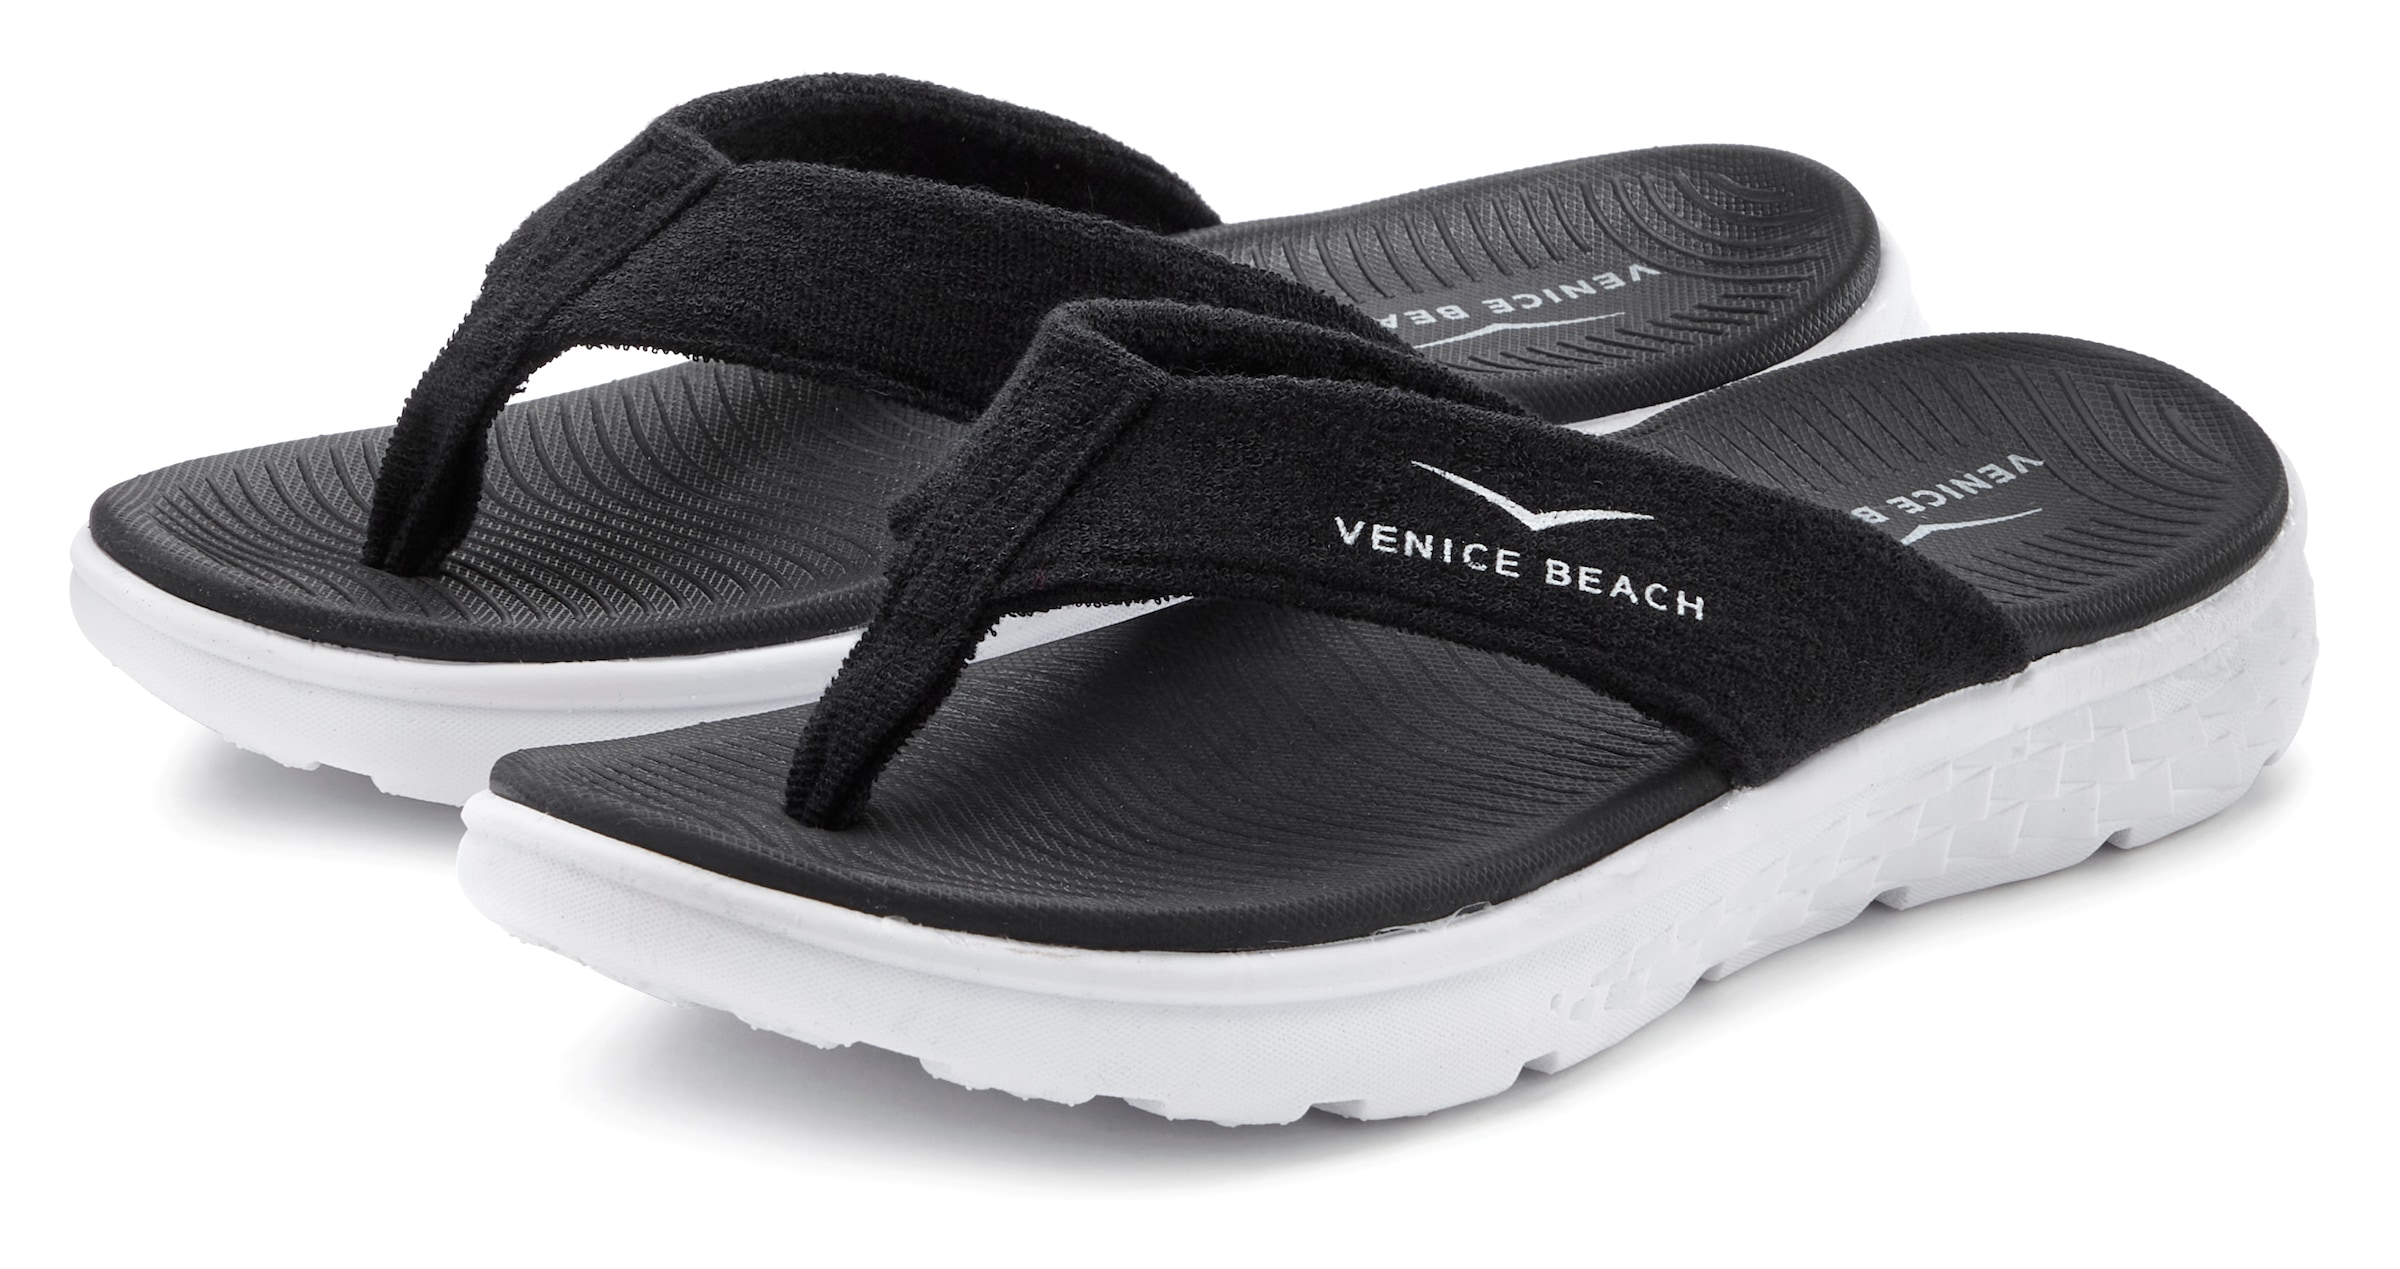 Venice Beach Badezehentrenner, Sandale, Pantolette, Badeschuh ultraleicht im sportiven Look VEGAN